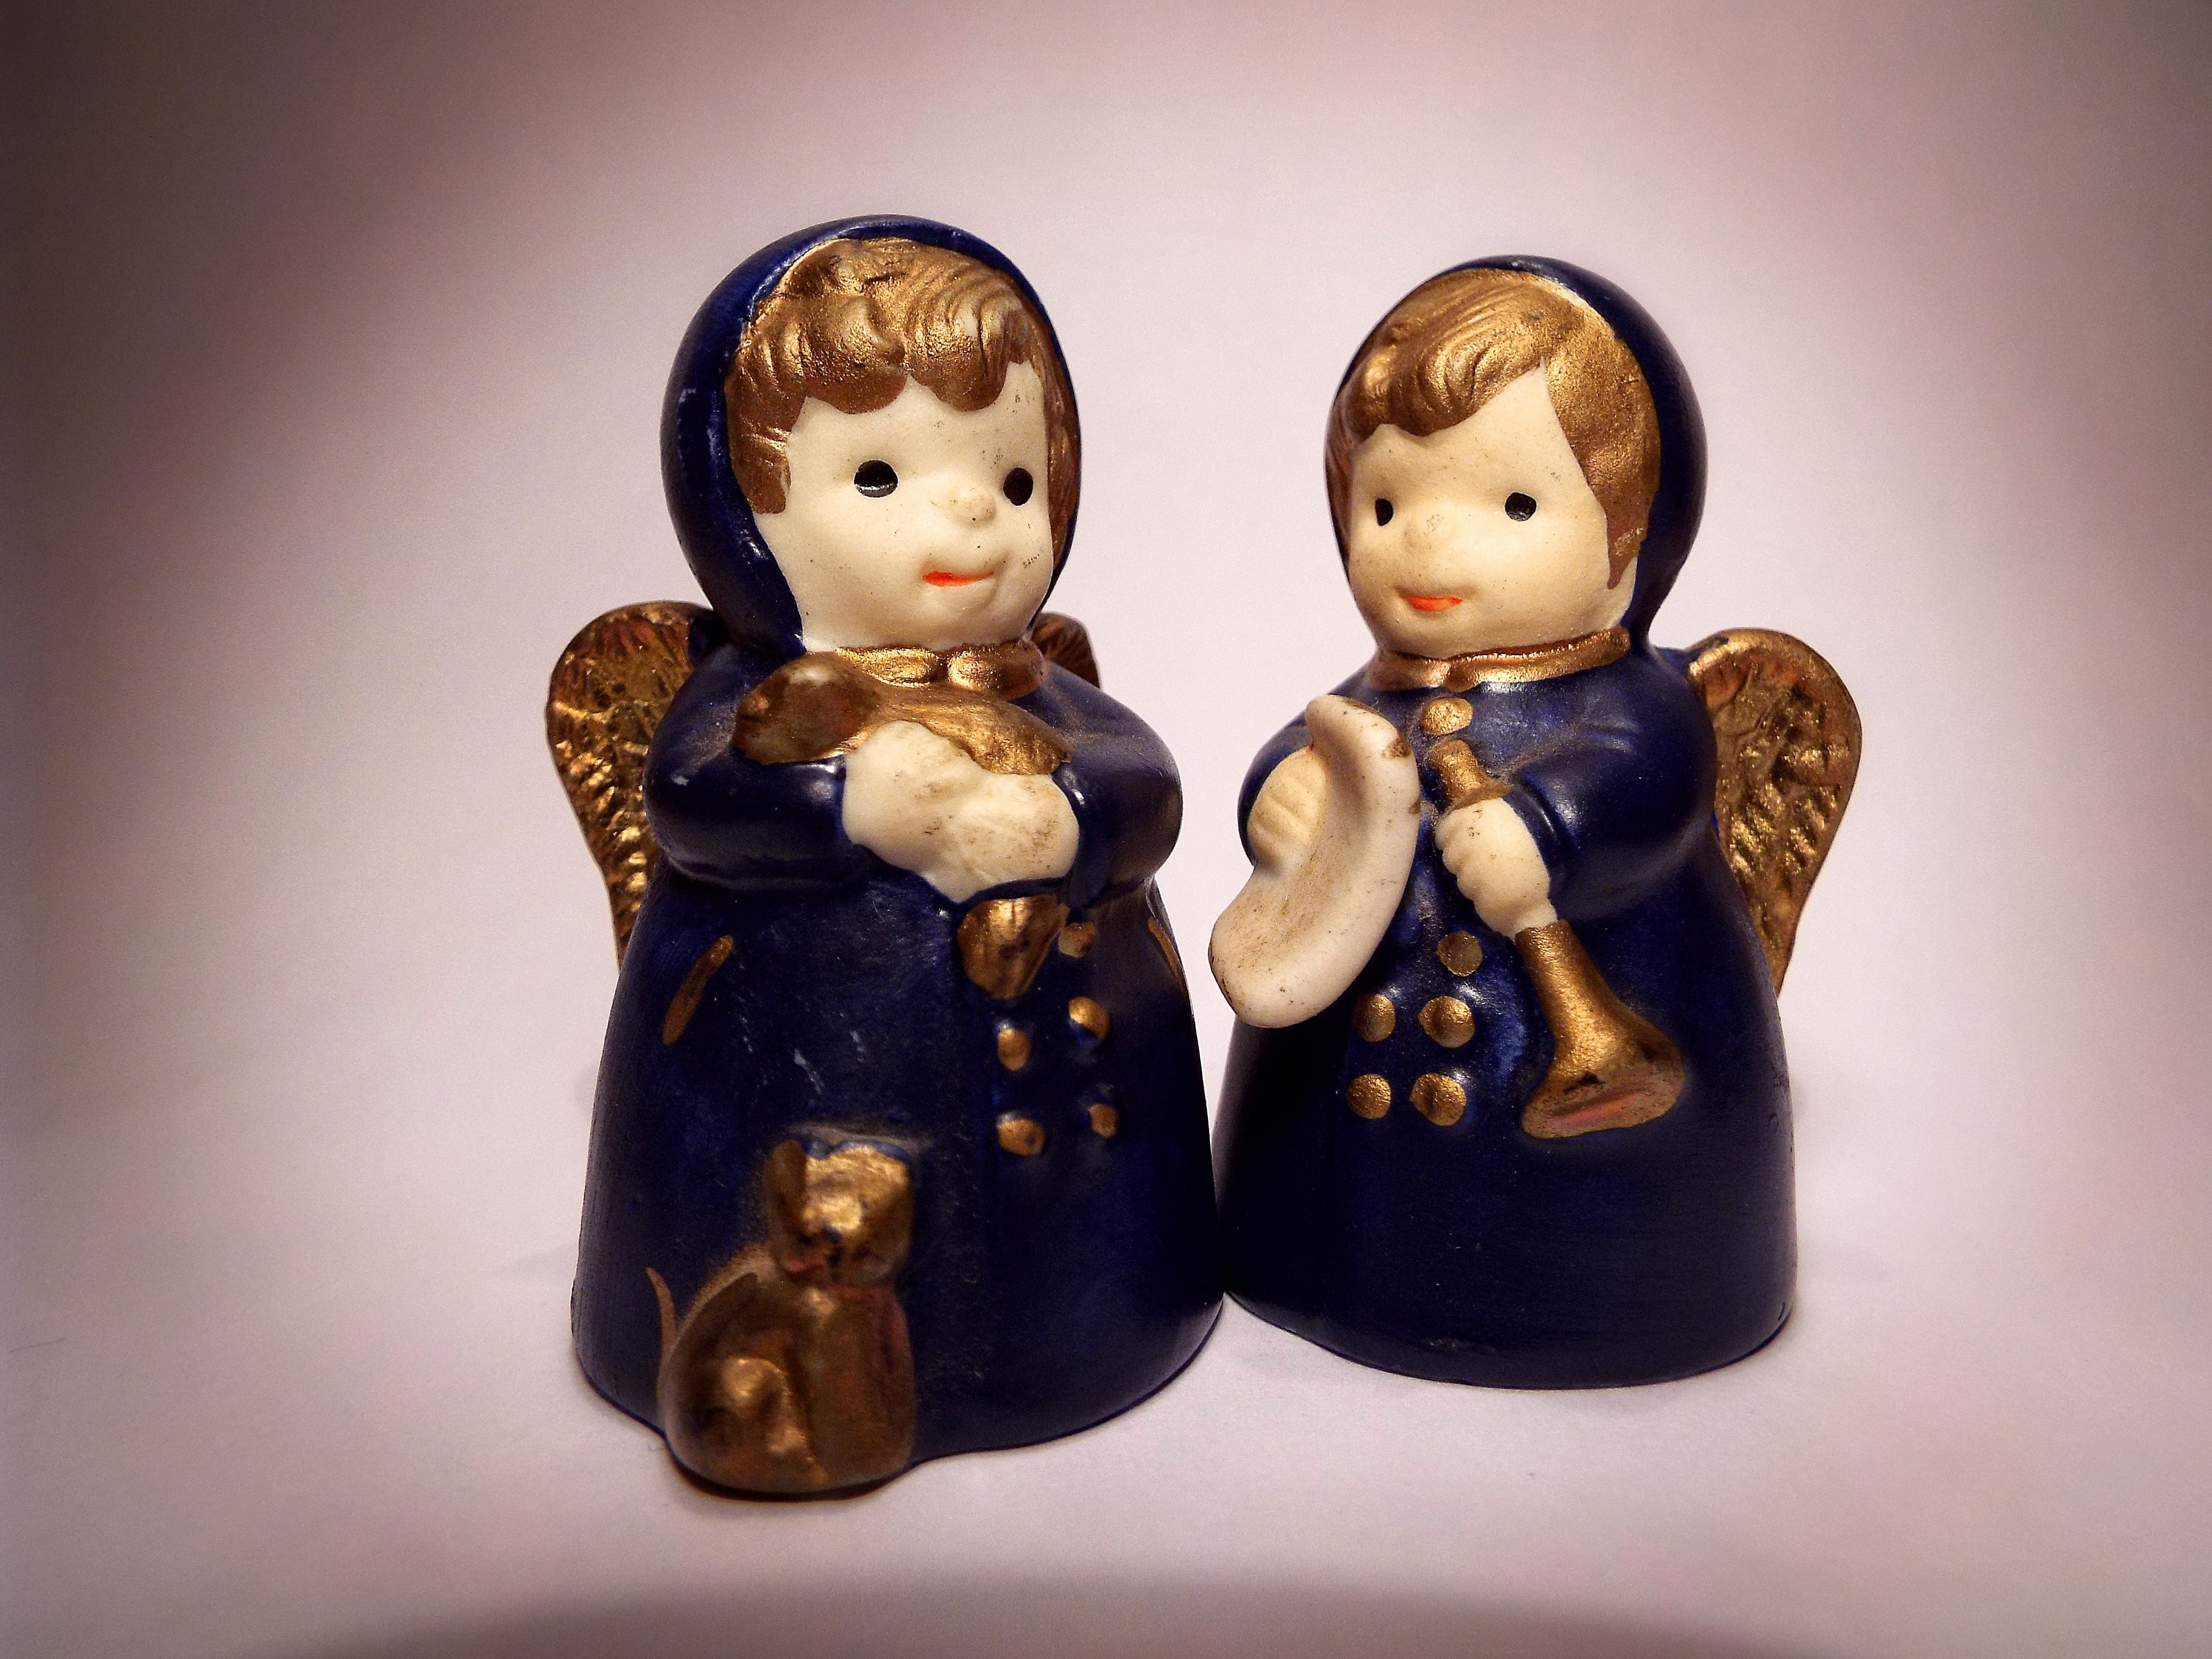 2 blue angel figurines